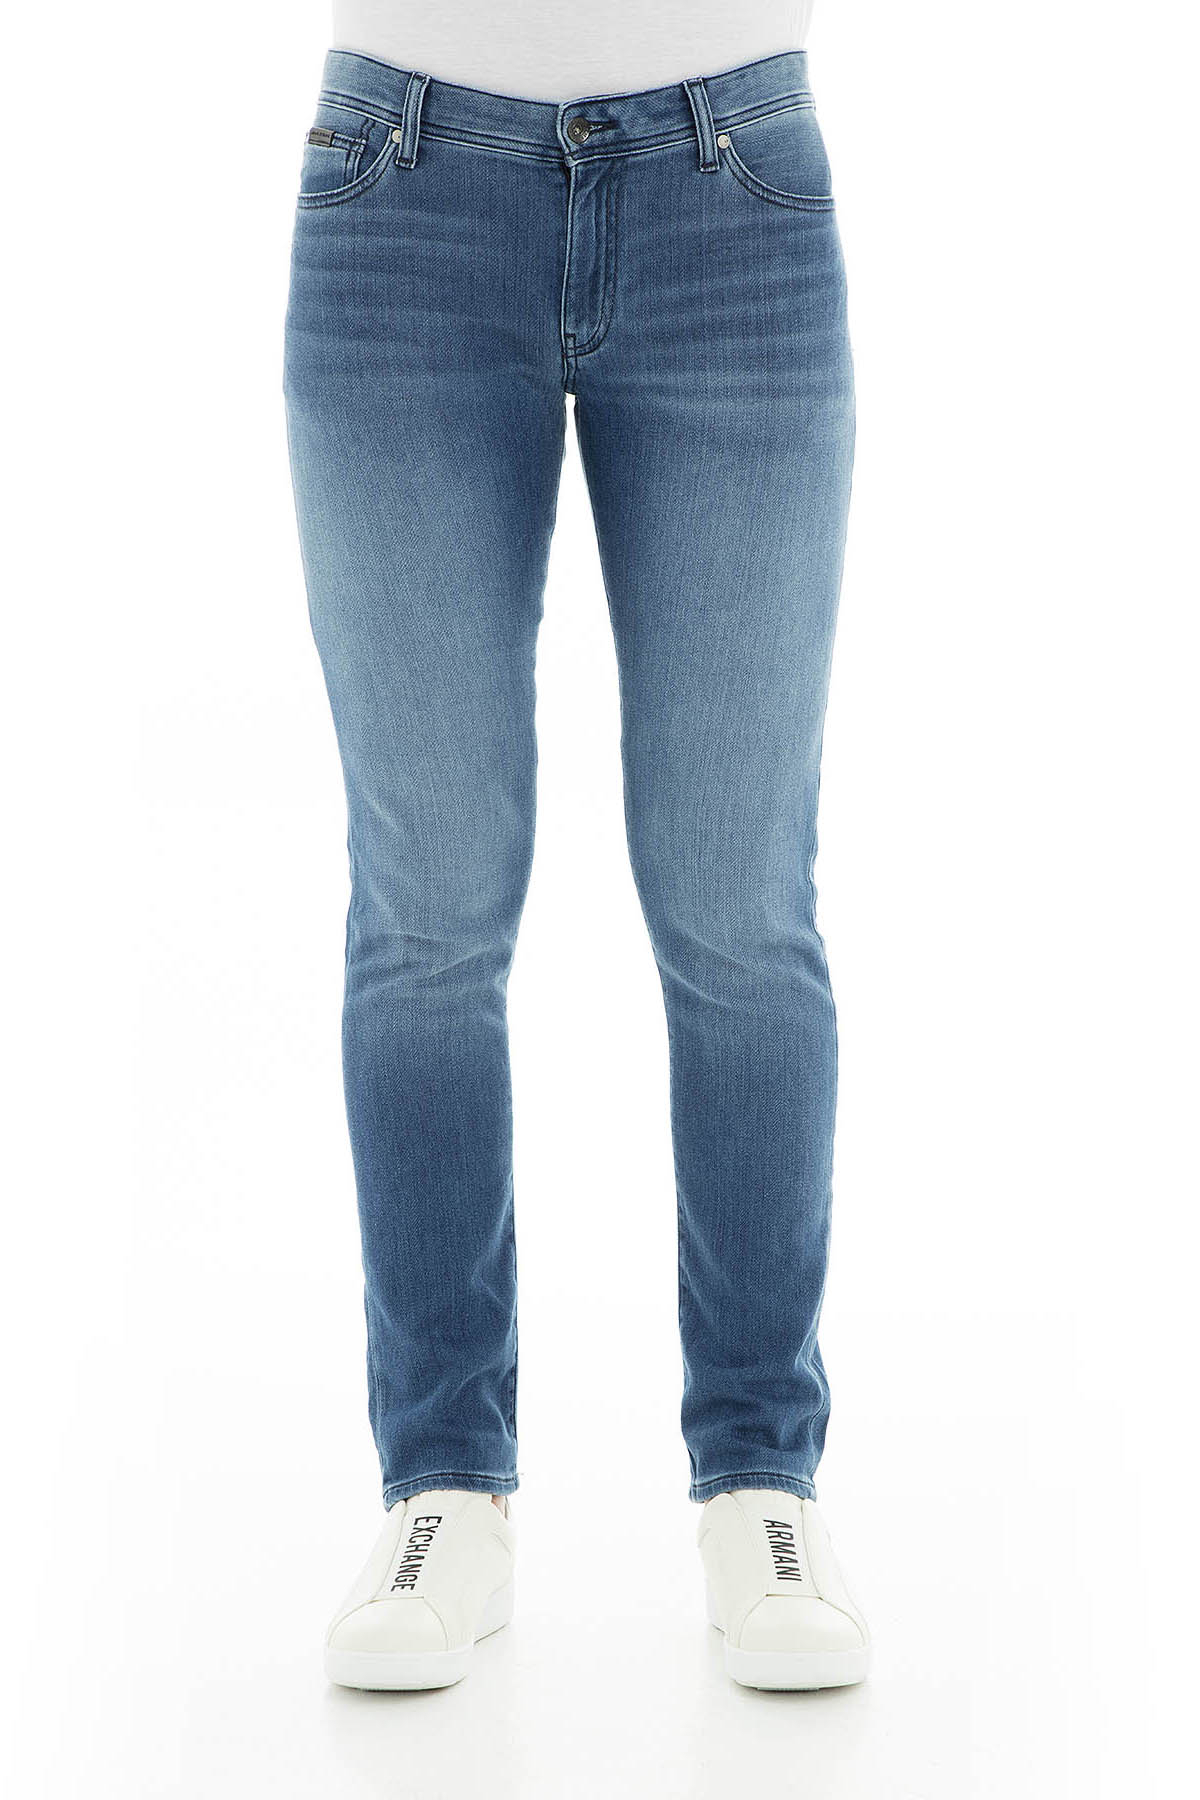 Armani Exchange J14 Jeans Erkek Kot Pantolon 3GZJ14 Z1QMZ 1500 İNDİGO